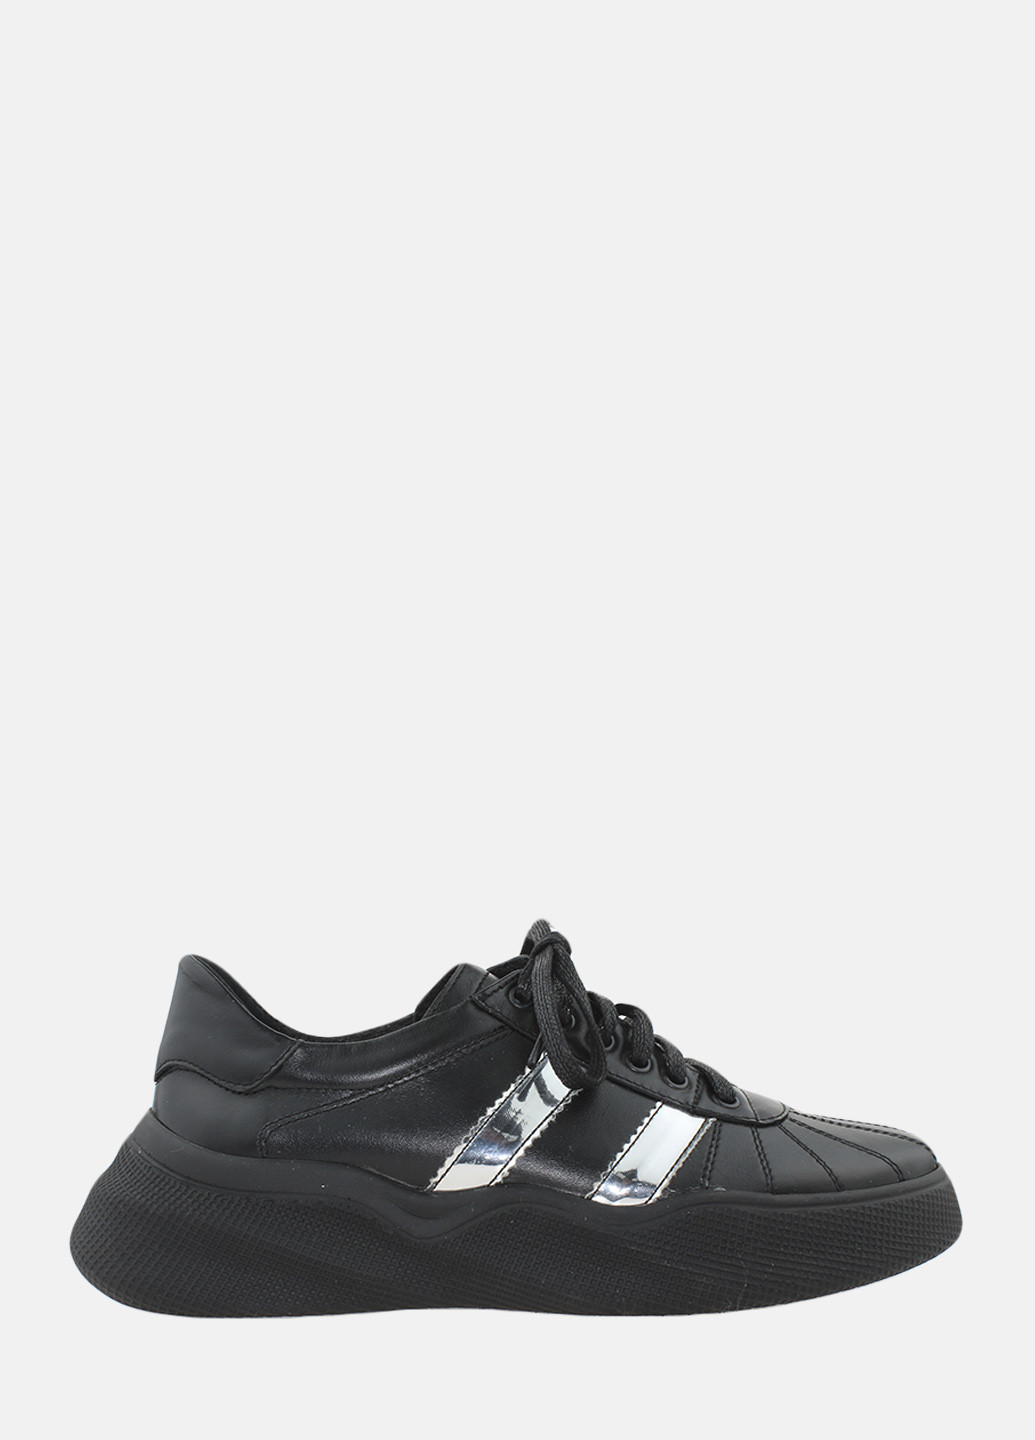 Черные демисезонные кроссовки re6584 черный Emilio